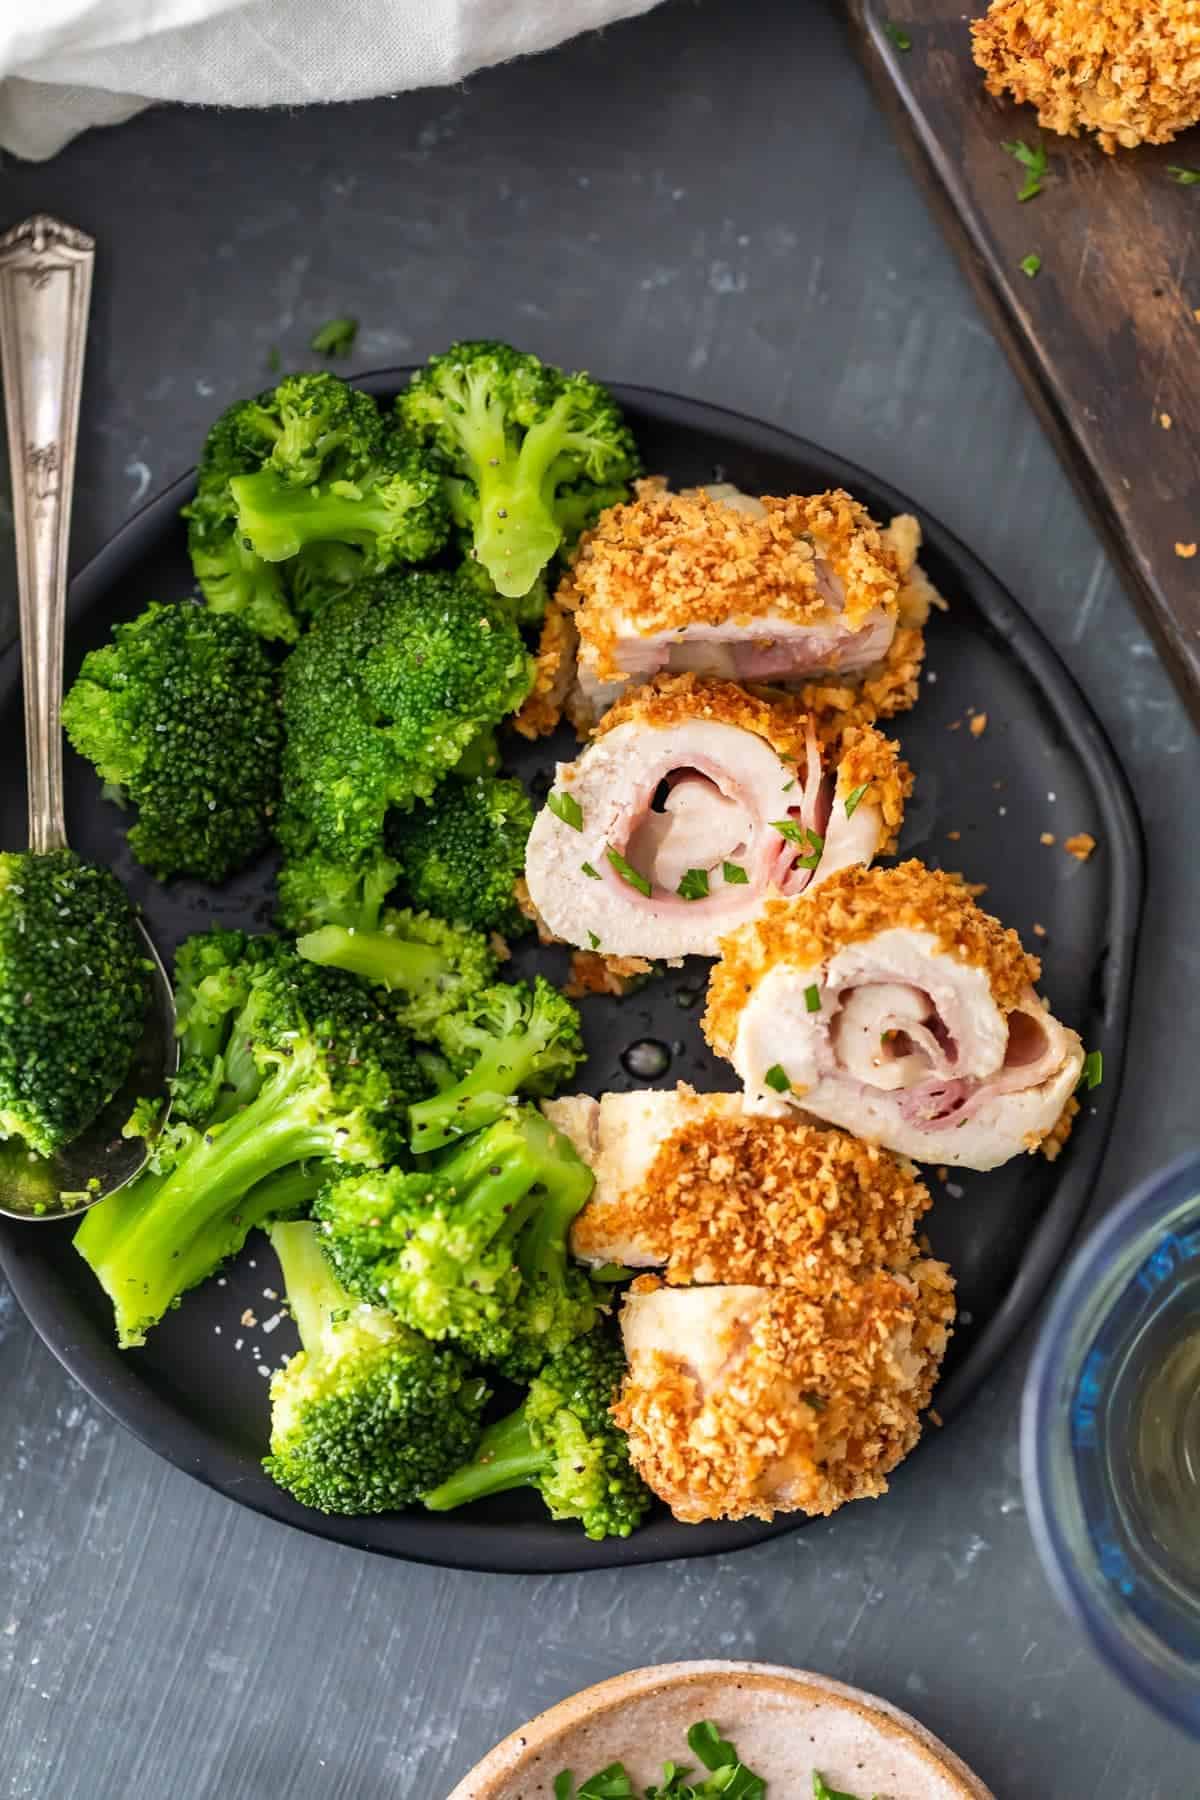 Baked Chicken Cordon Bleu with broccoli and creamy dijon sauce